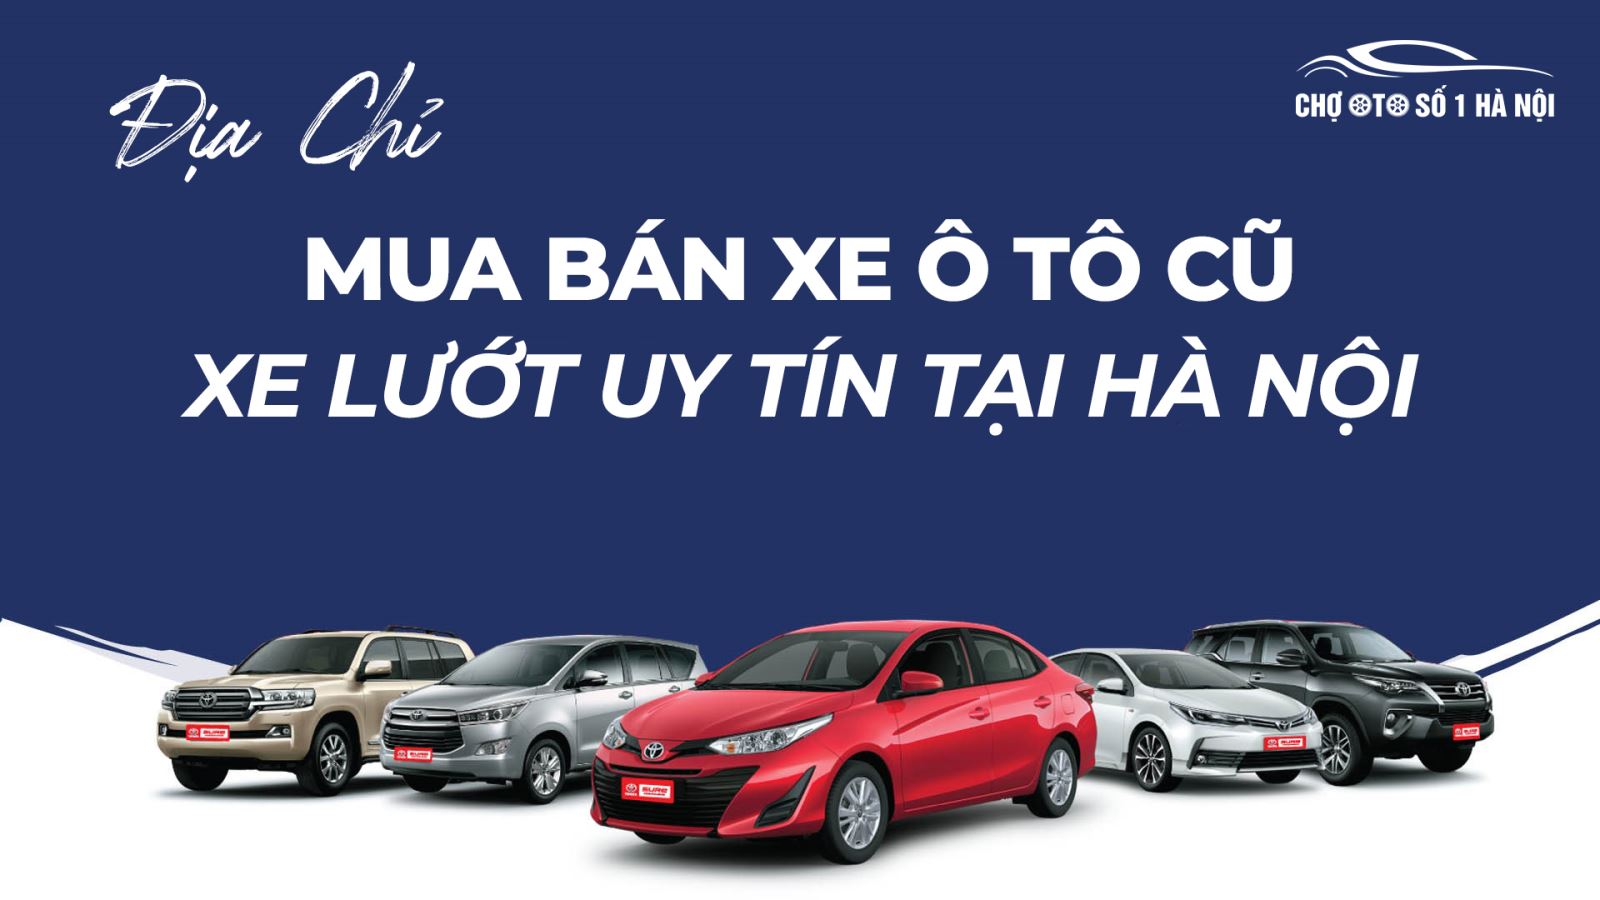 Top 10 dịch vụ cho thuê xe tự lái Hà Nội giá rẻ tốt nhất